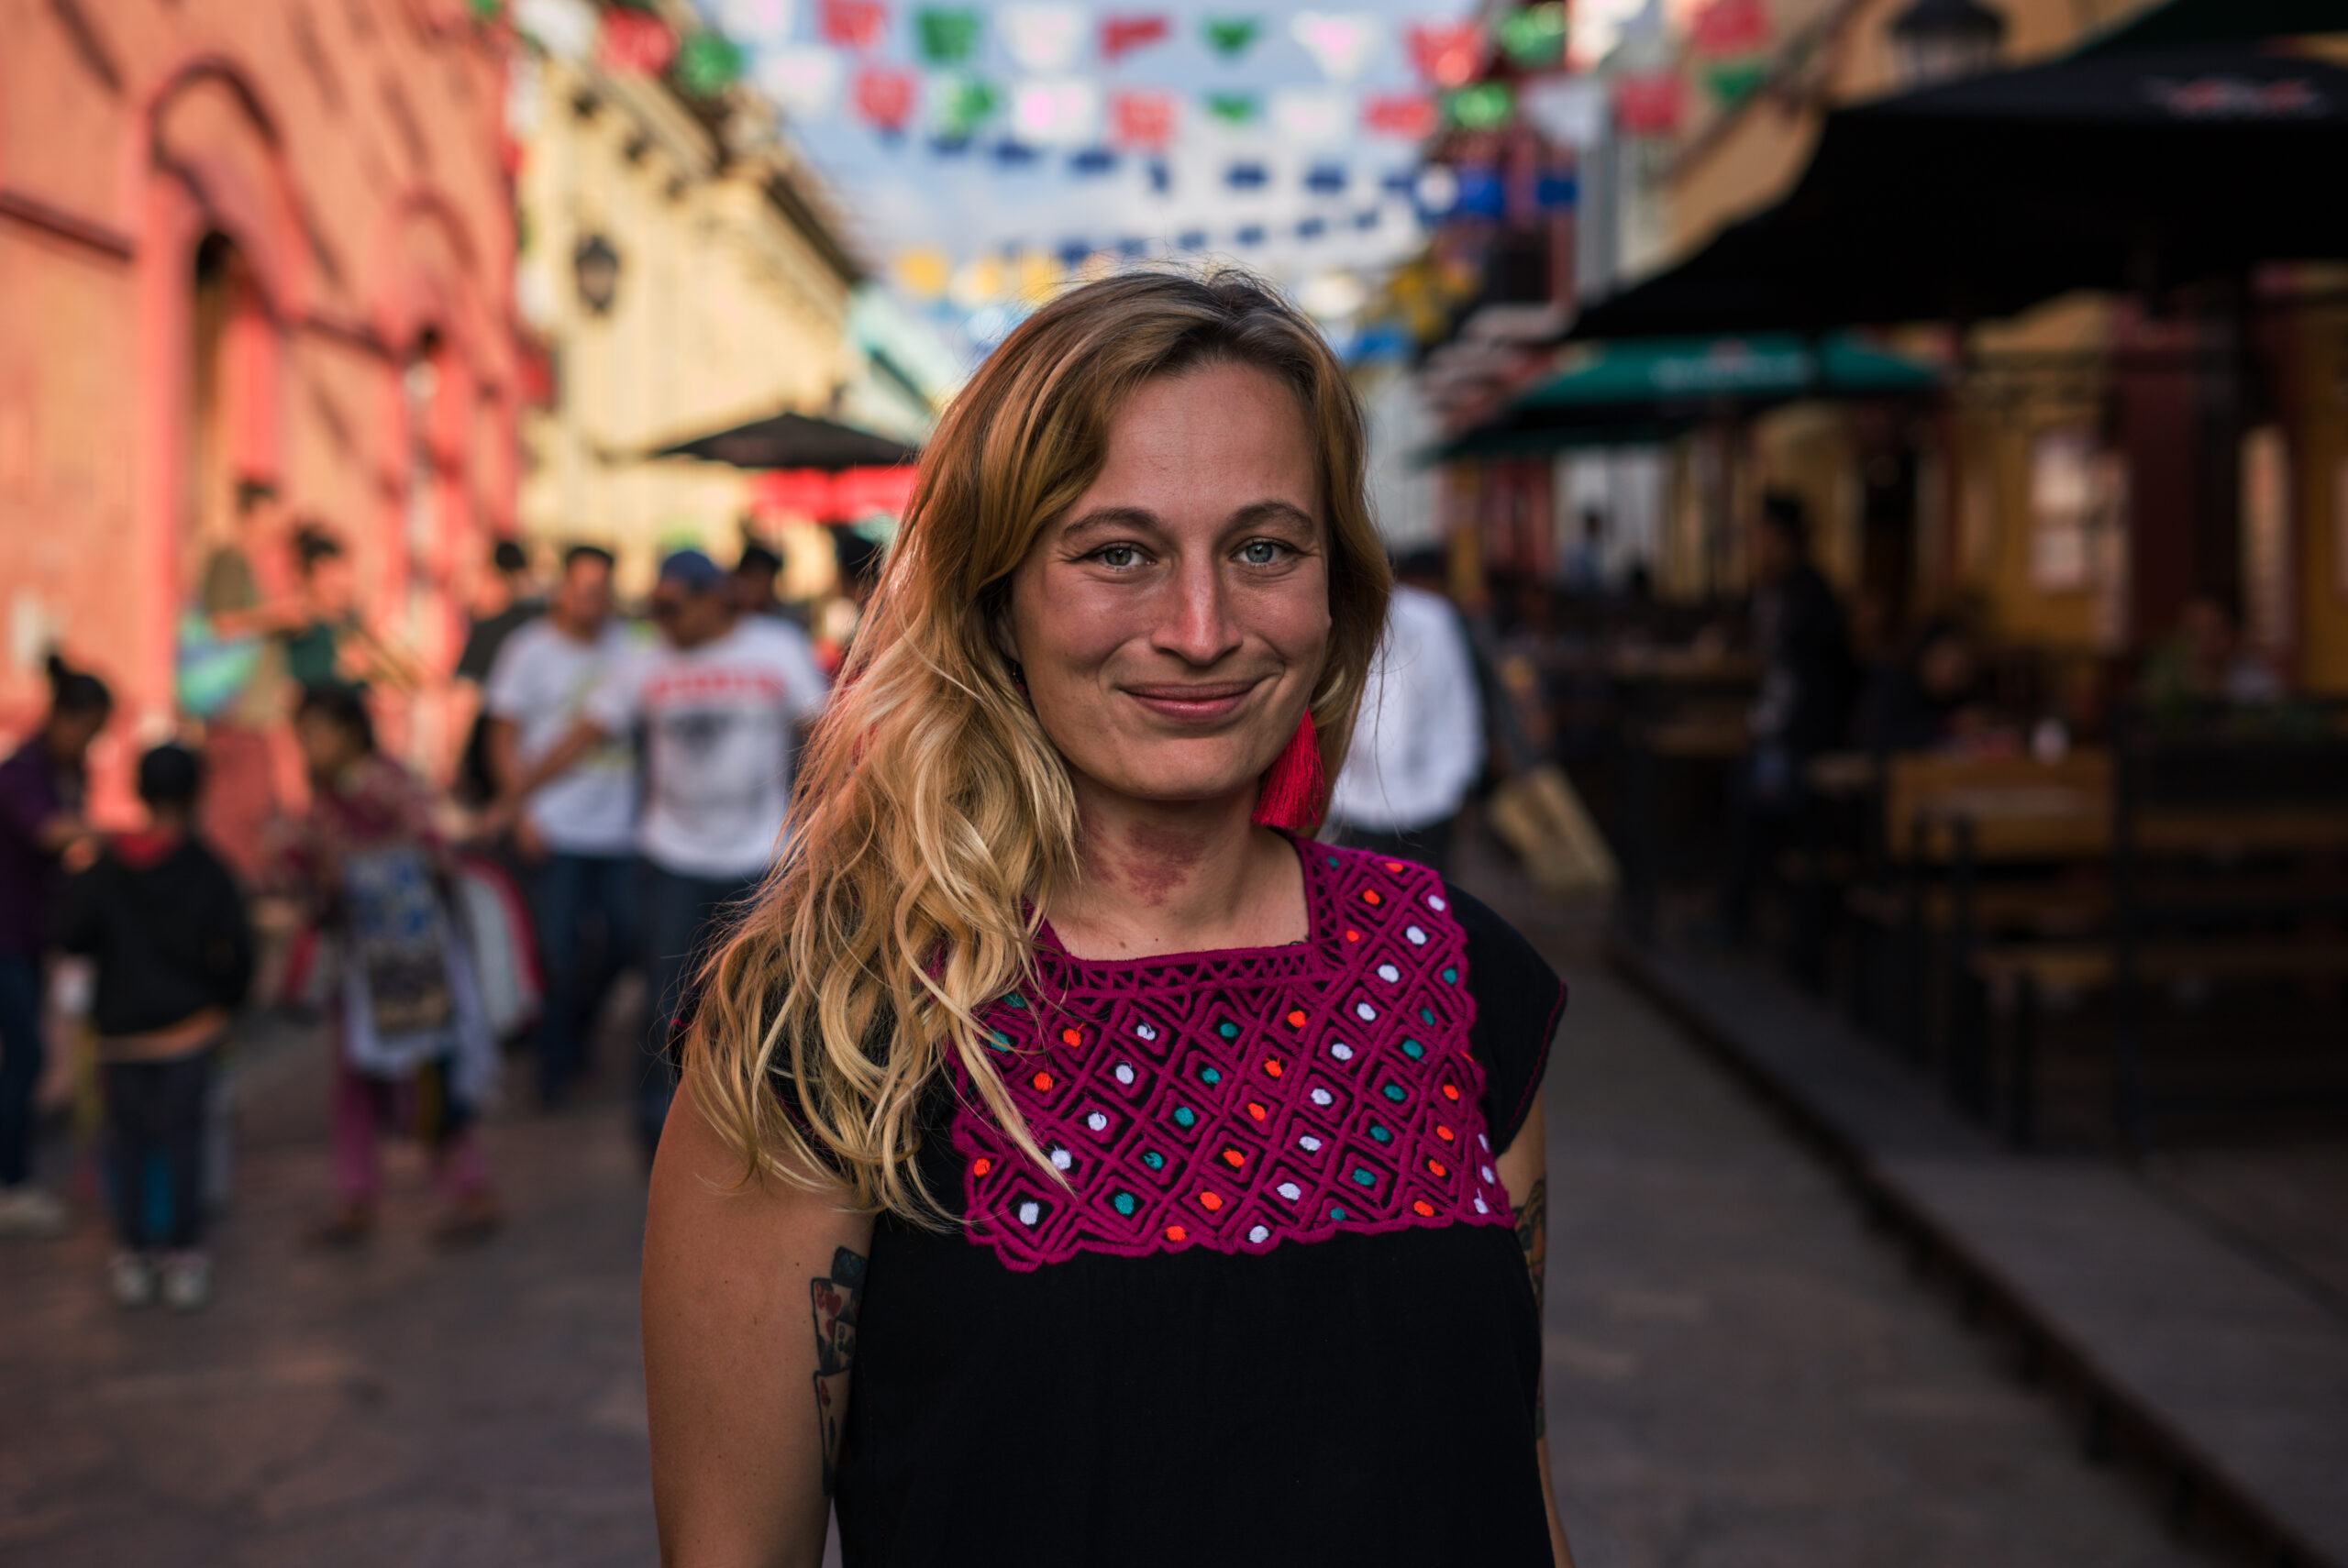 Ola Synowiec na pierwszym planie, na tle ulicy w Meksyksu. Kobieta uśmiechnięta, rozpuszczone długie blond włosy, ubrana w bluzkę z dekoracją w stylu meksykańskim.